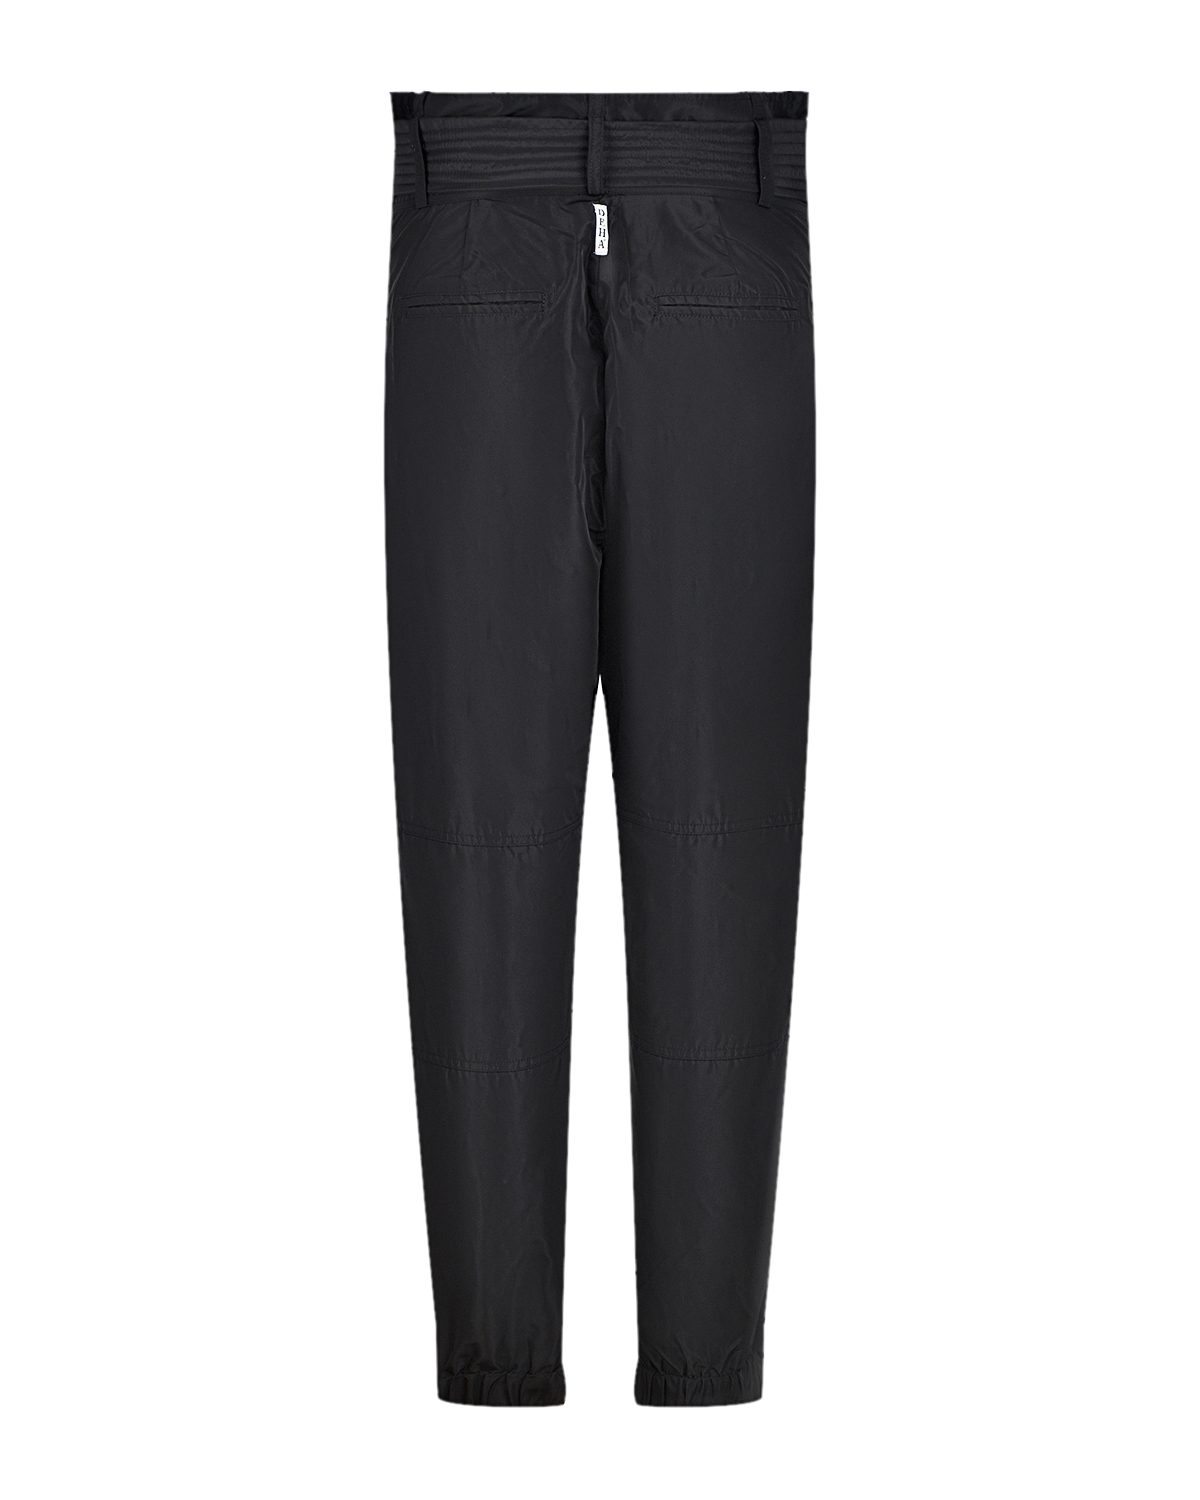 Черные брюки с широким поясом Deha, размер 40, цвет черный - фото 4